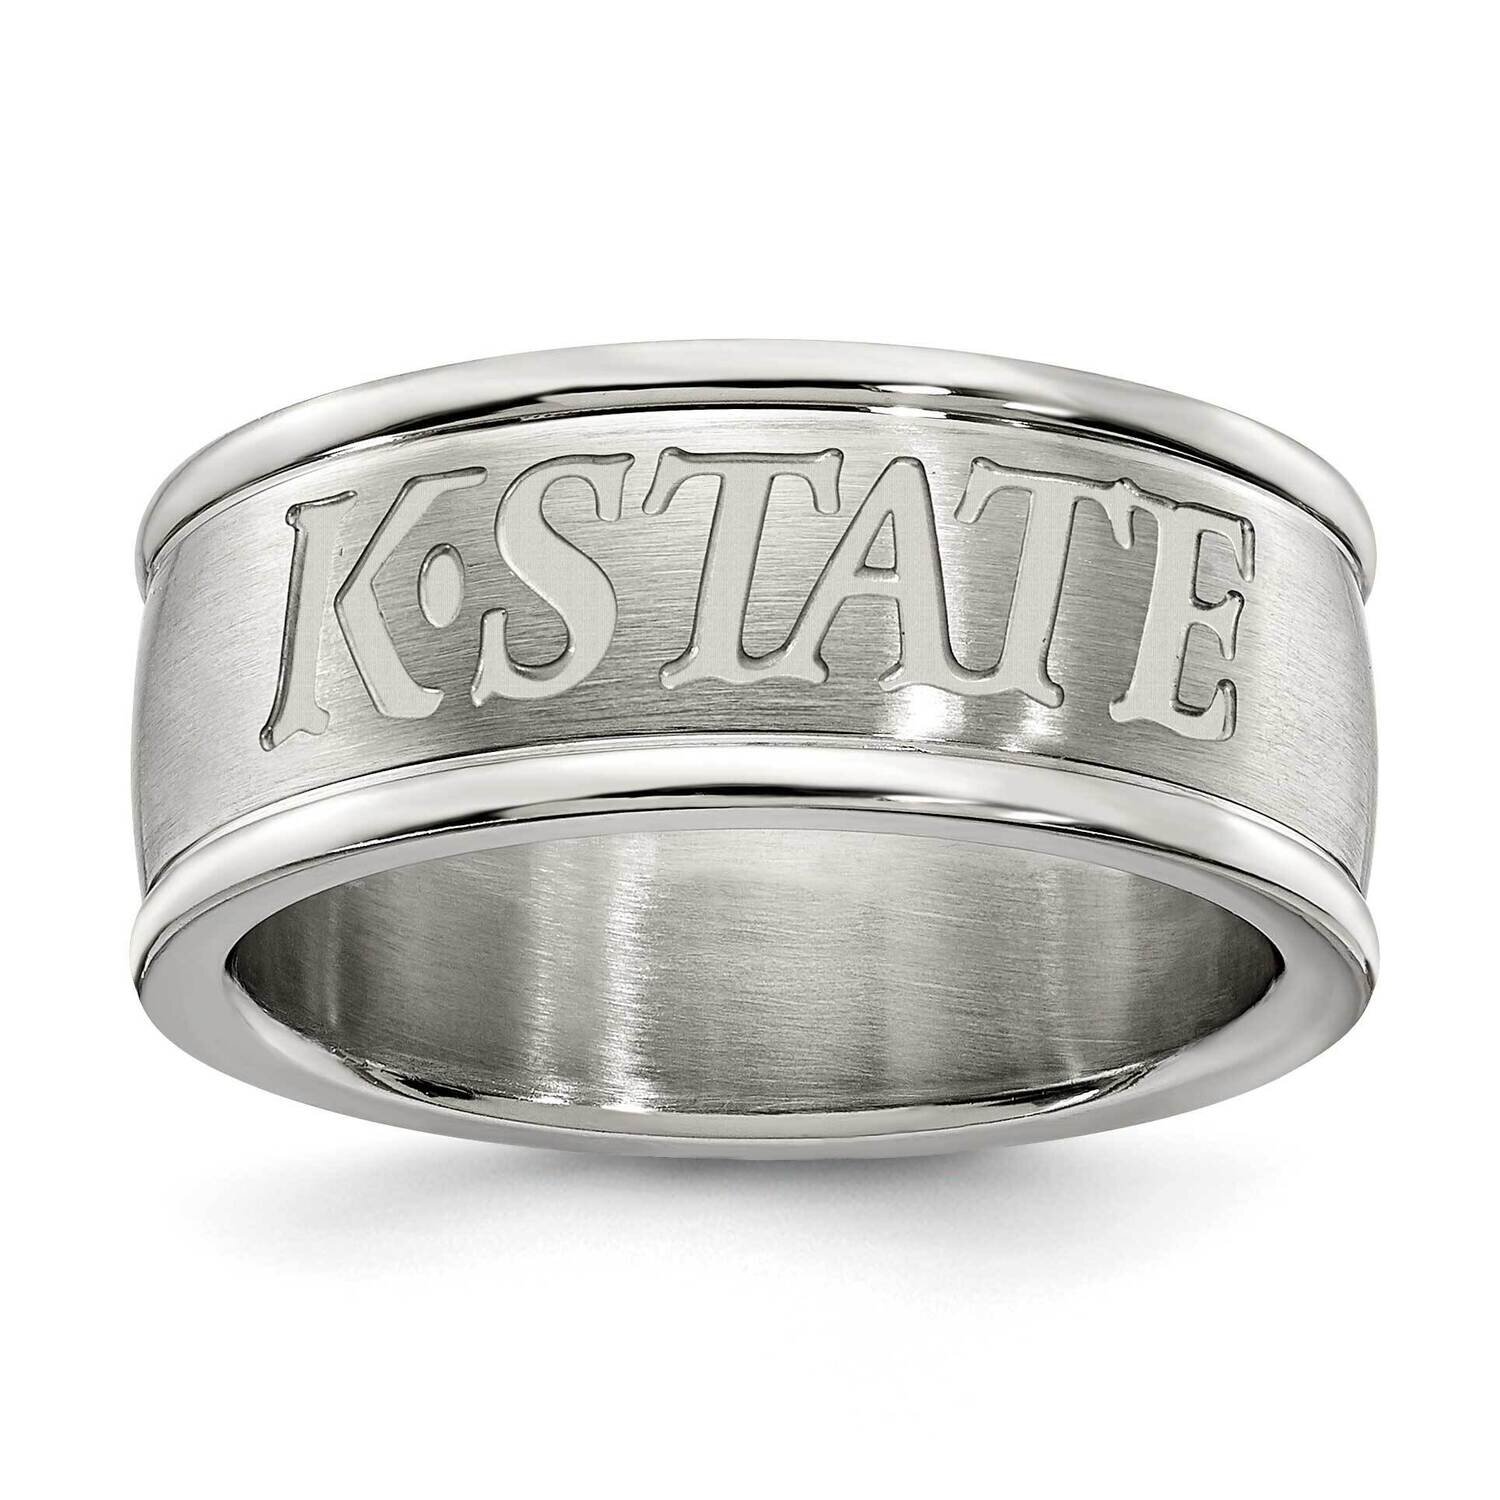 Kansas State University Logo Band Ring Stainless Steel KSU335-SZ6